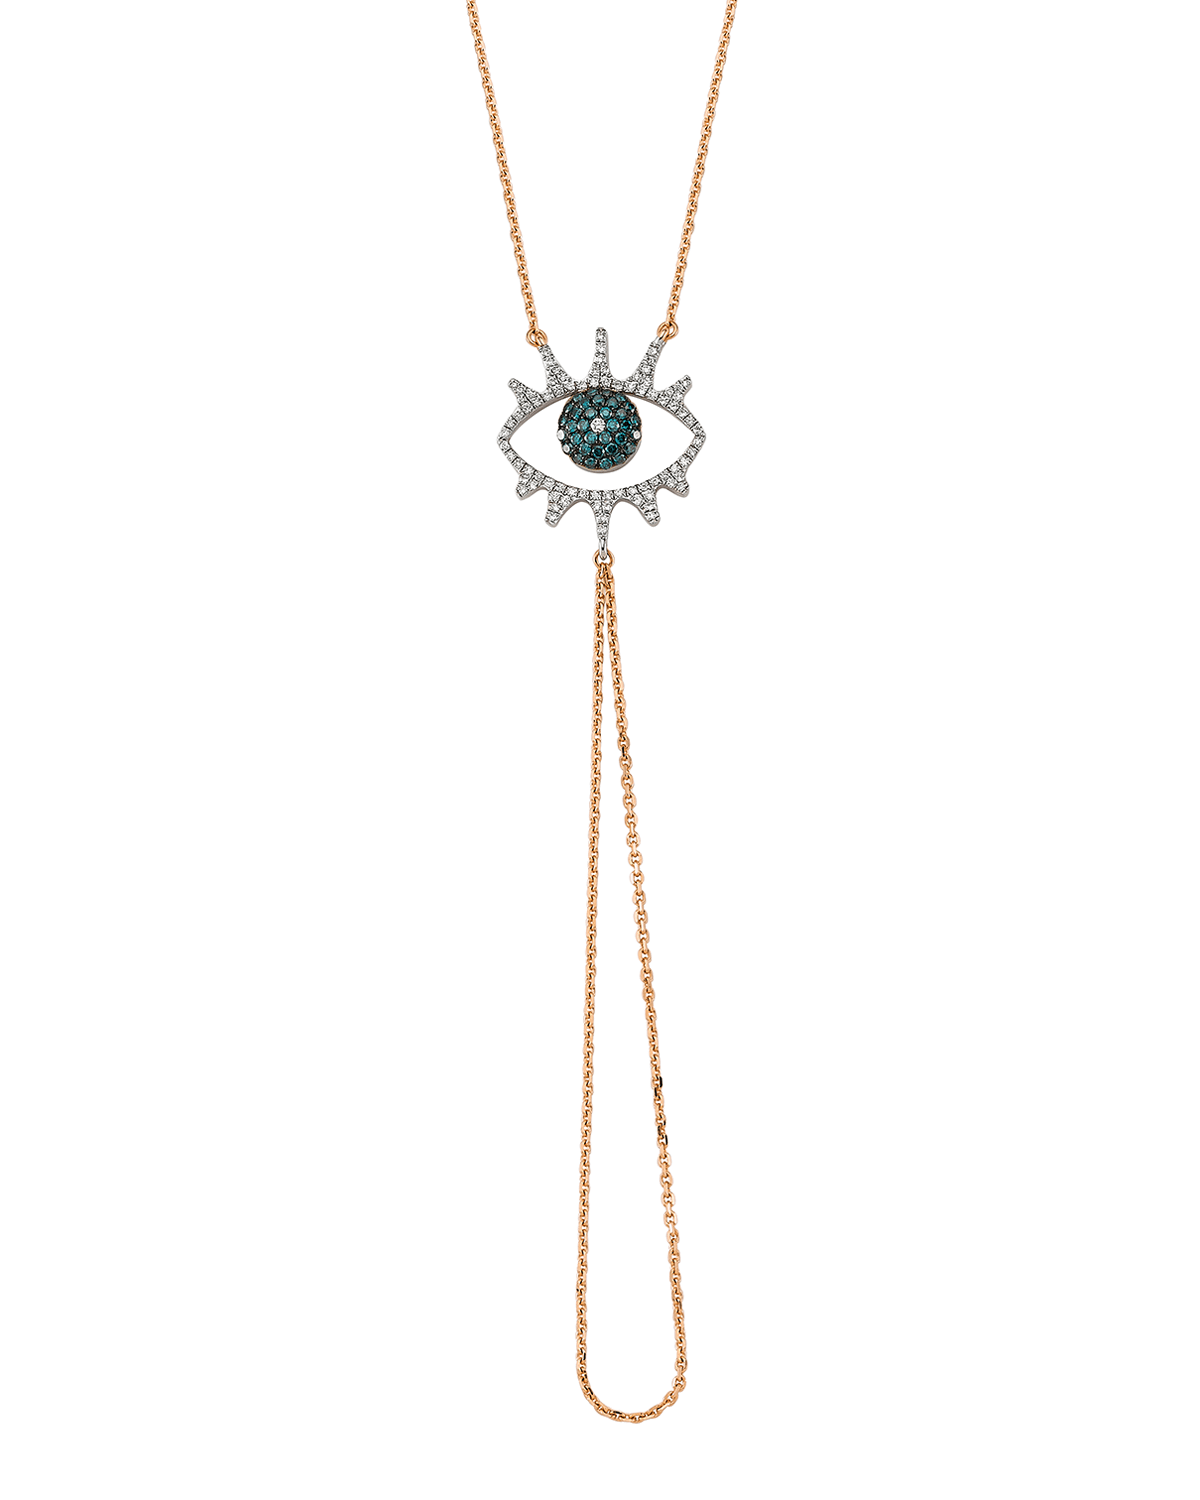 BeeGoddess Eye Light Blue/White Diamond and Chain Hand Bracelet